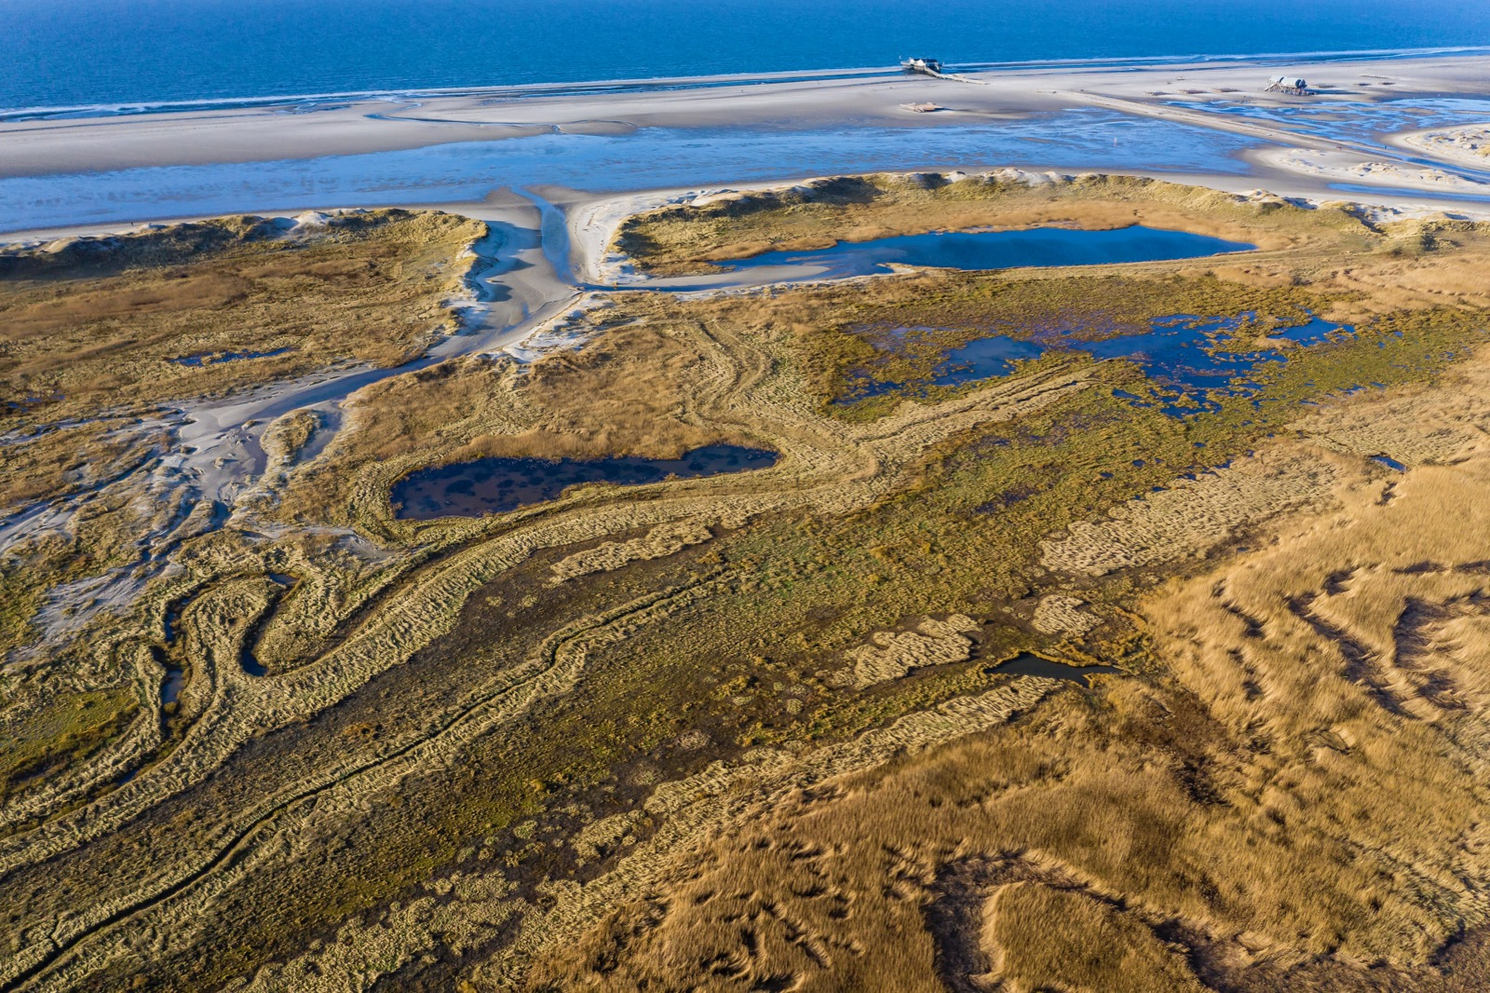 Luftbild von Salzwiesen und Dünen mit geschwungenen Wasserläufen